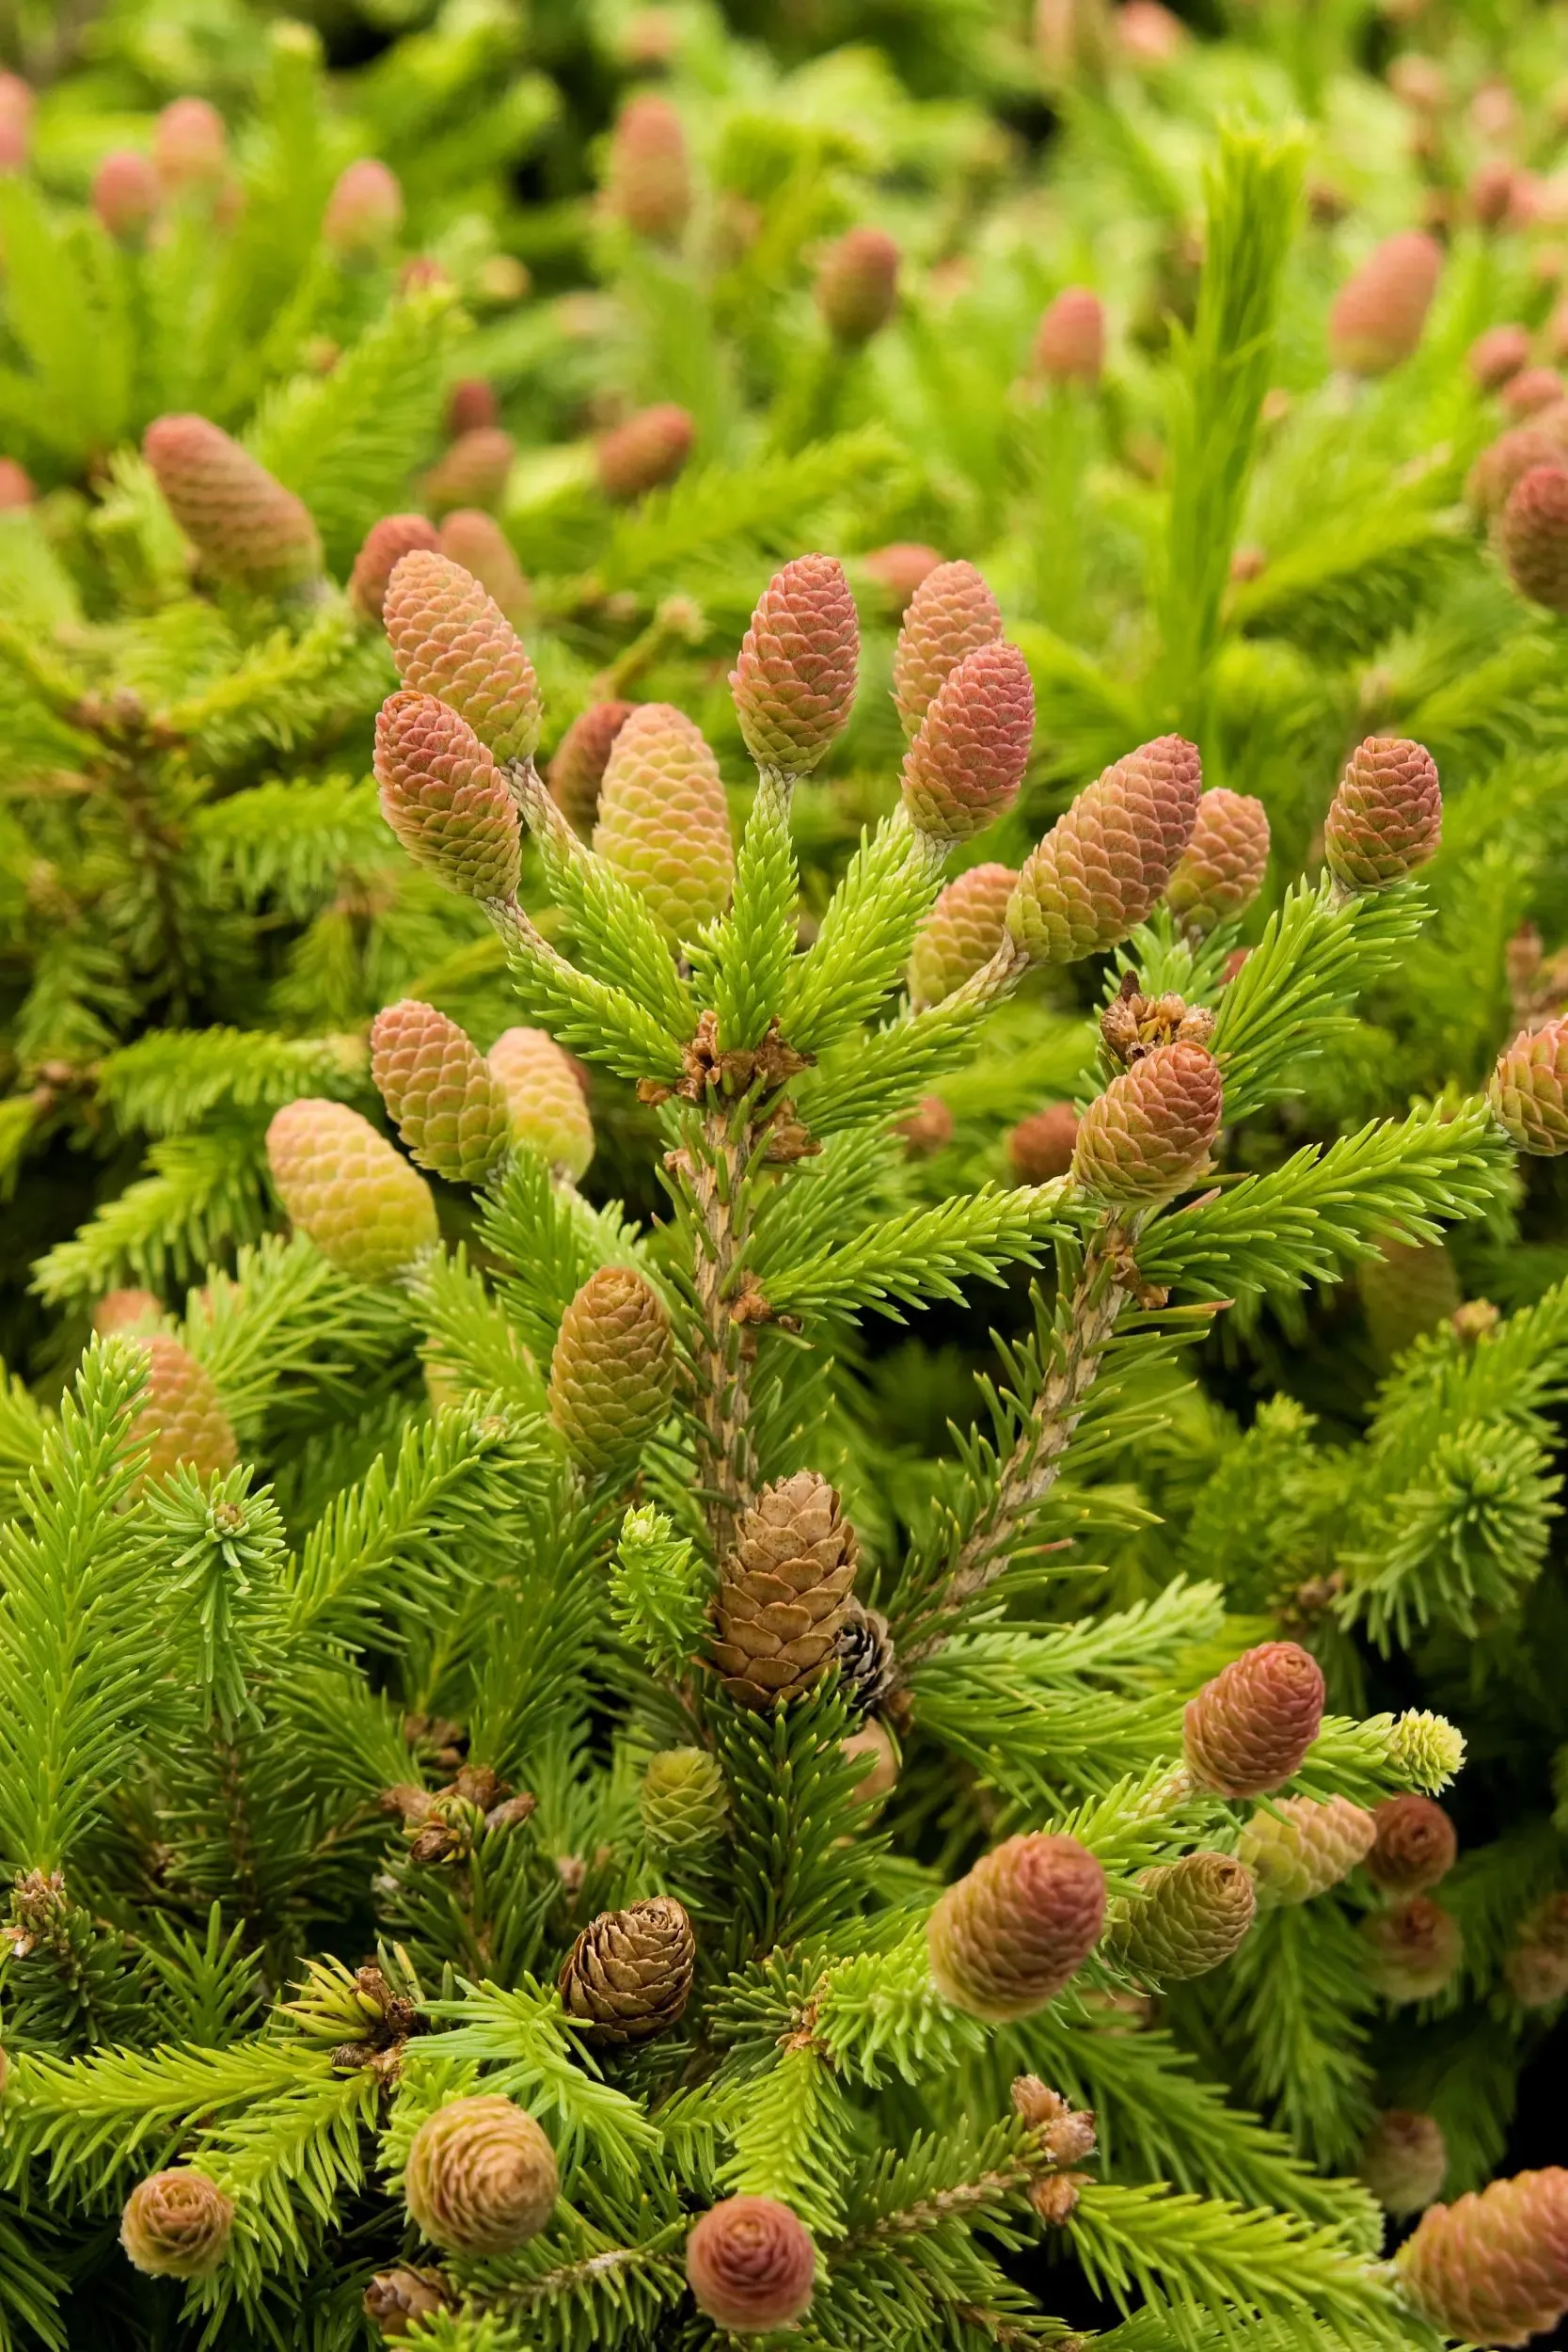 Evergreen_Spruce-Pusch-Dwarf-Norway2.jpg